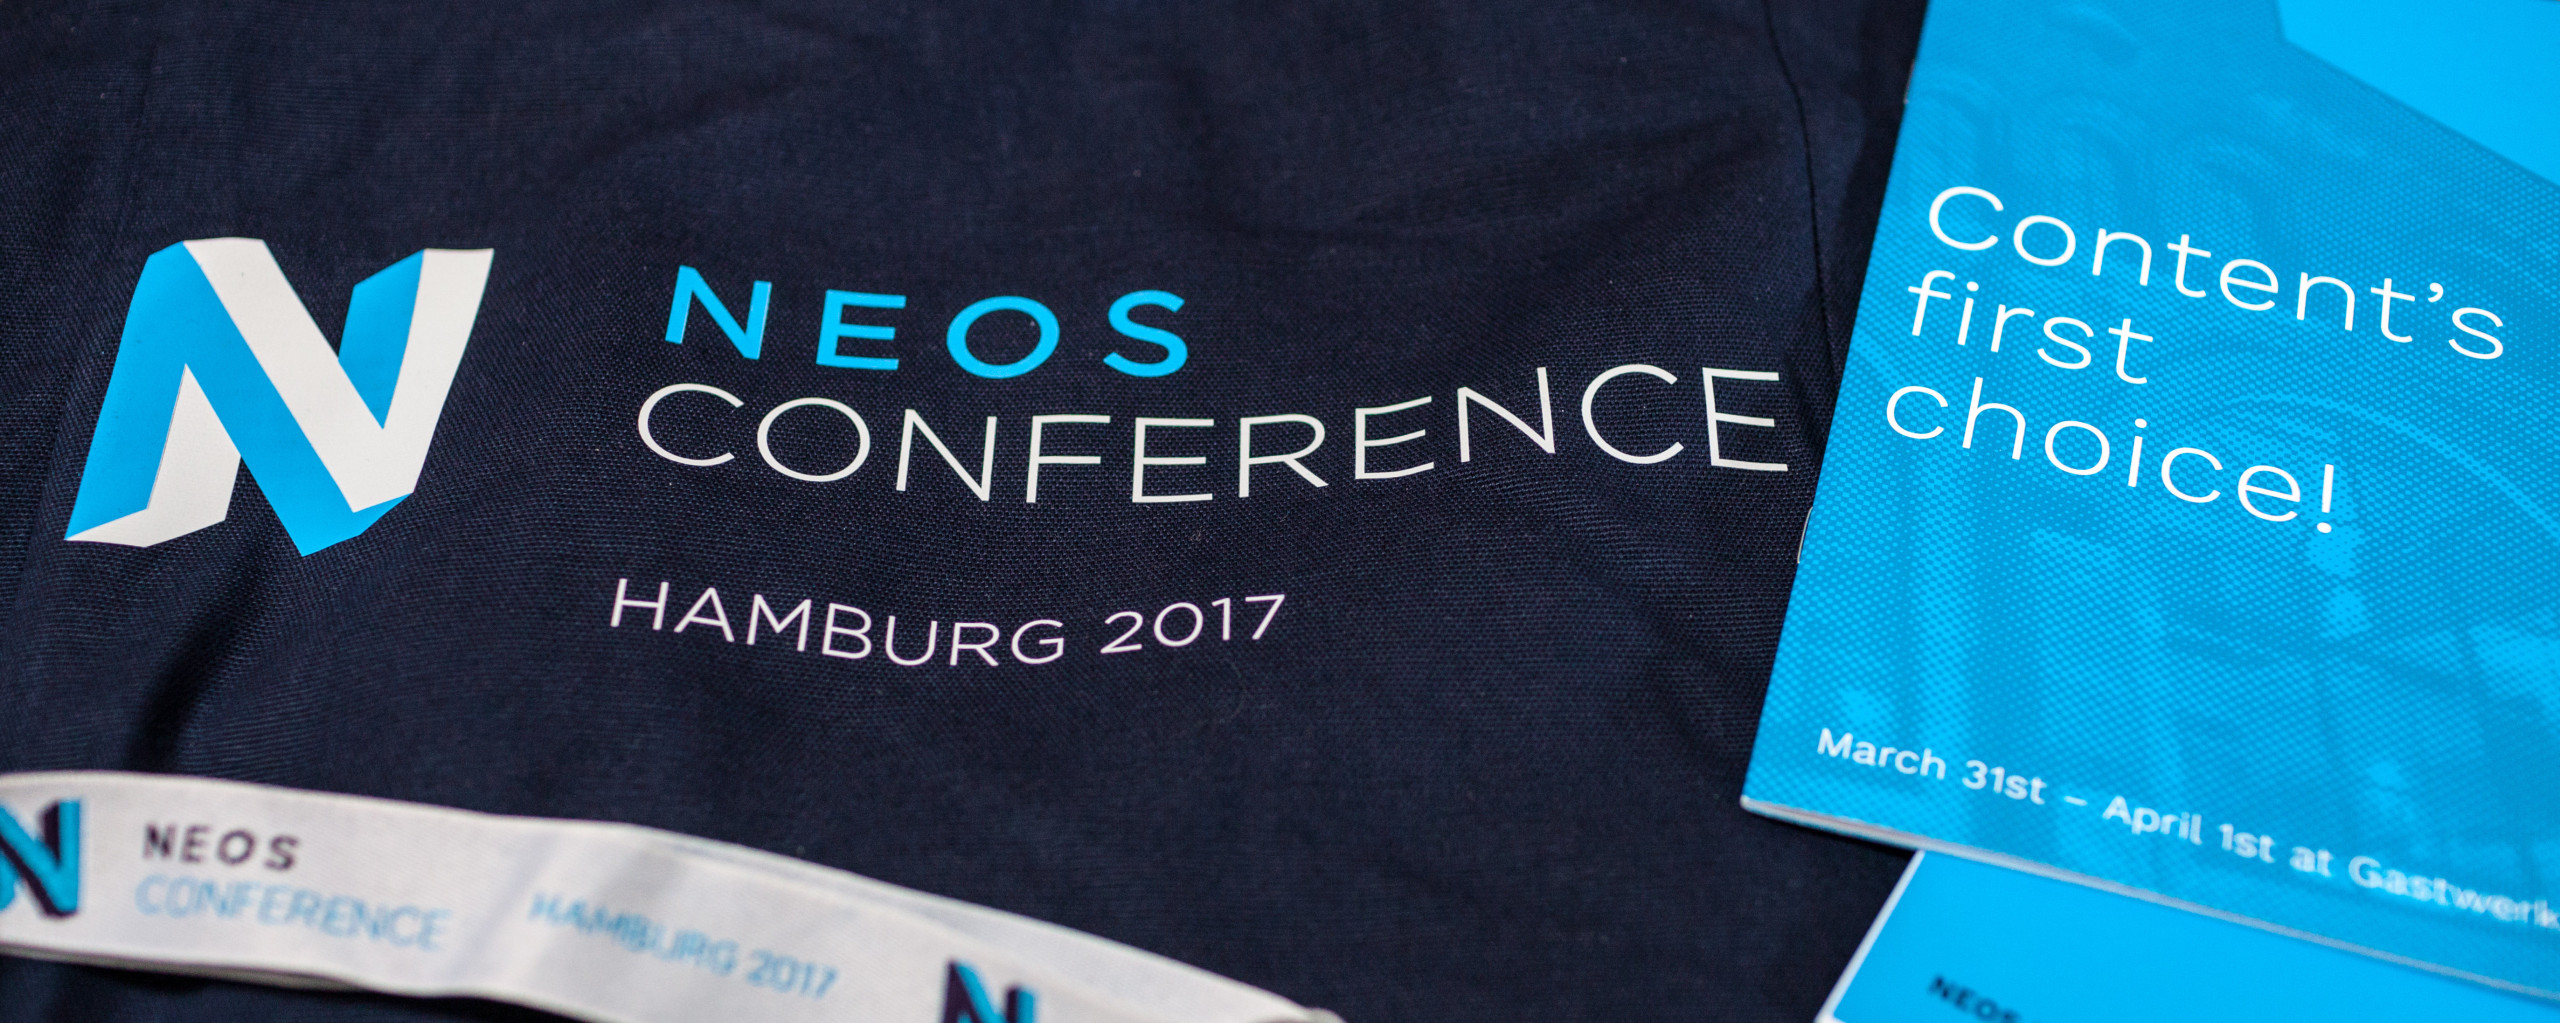 Neos Conference 2017 - 2 Tage voller spannender Vorträge rund um Neos CMS